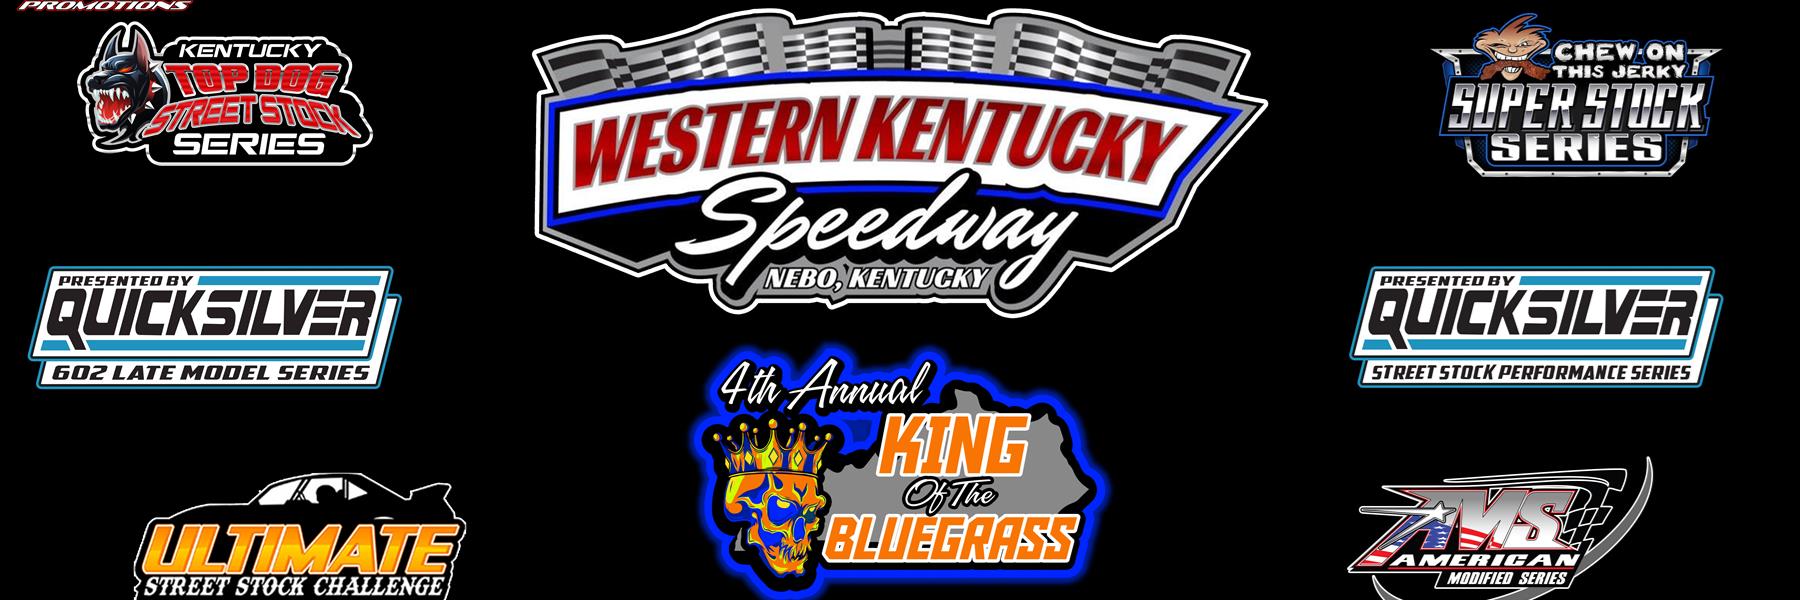 9/17/2022 - Western Kentucky Speedway